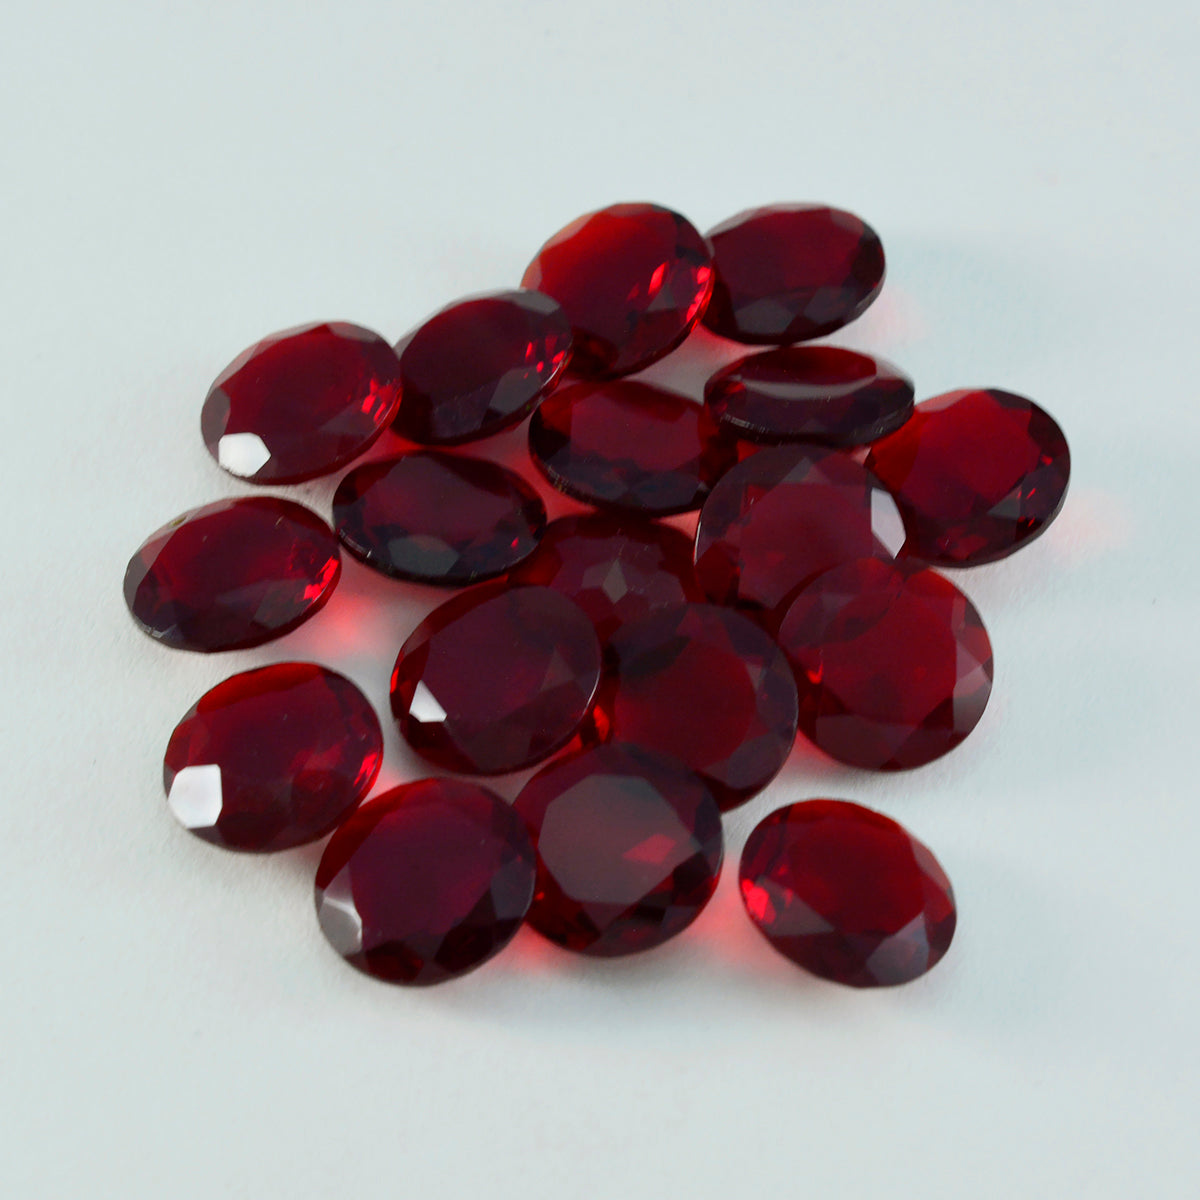 Riyogems 1PC Red Ruby CZ gefacetteerd 10x10 mm ronde vorm mooie kwaliteitsedelsteen